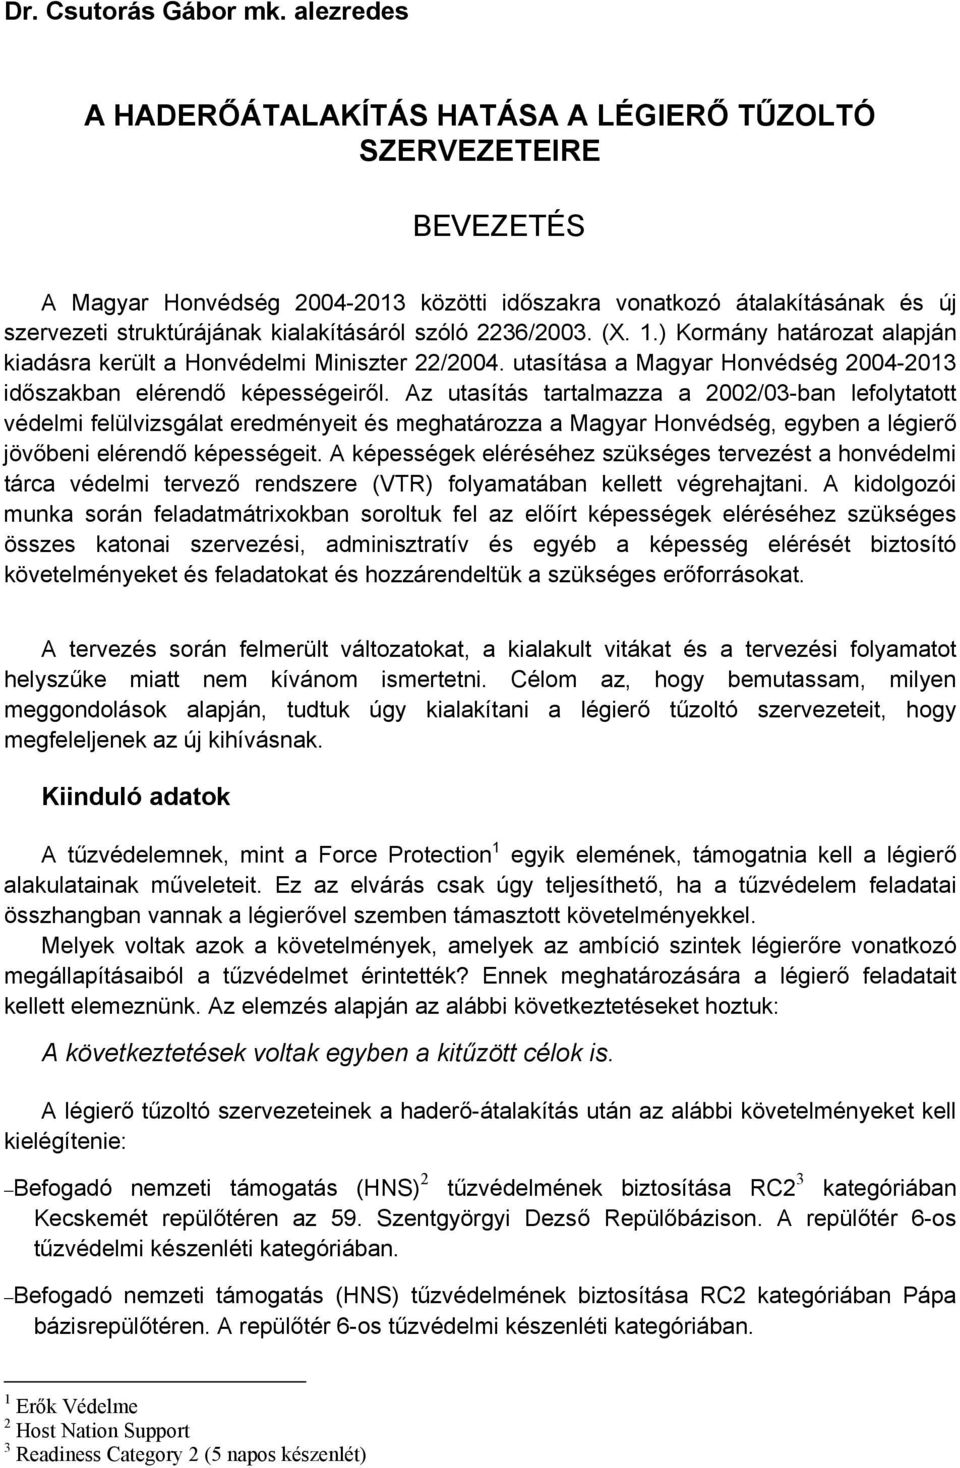 szóló 2236/2003. (X. 1.) Kormány határozat alapján kiadásra került a Honvédelmi Miniszter 22/2004. utasítása a Magyar Honvédség 2004-2013 időszakban elérendő képességeiről.